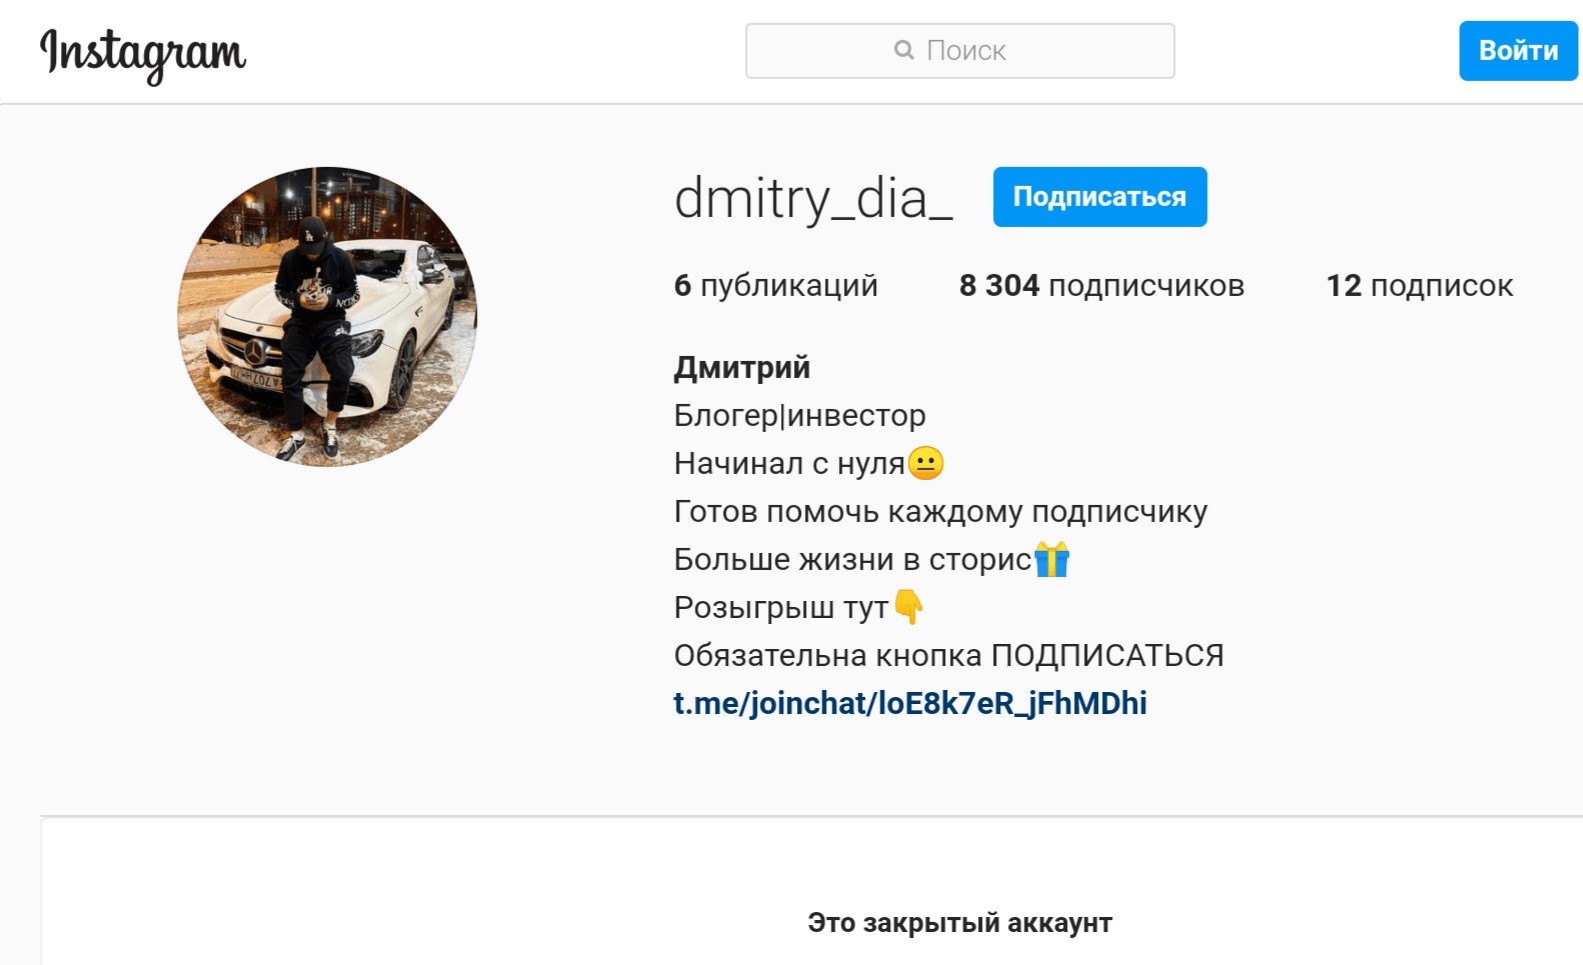 Инстаграм проекта Dmitry_dia-